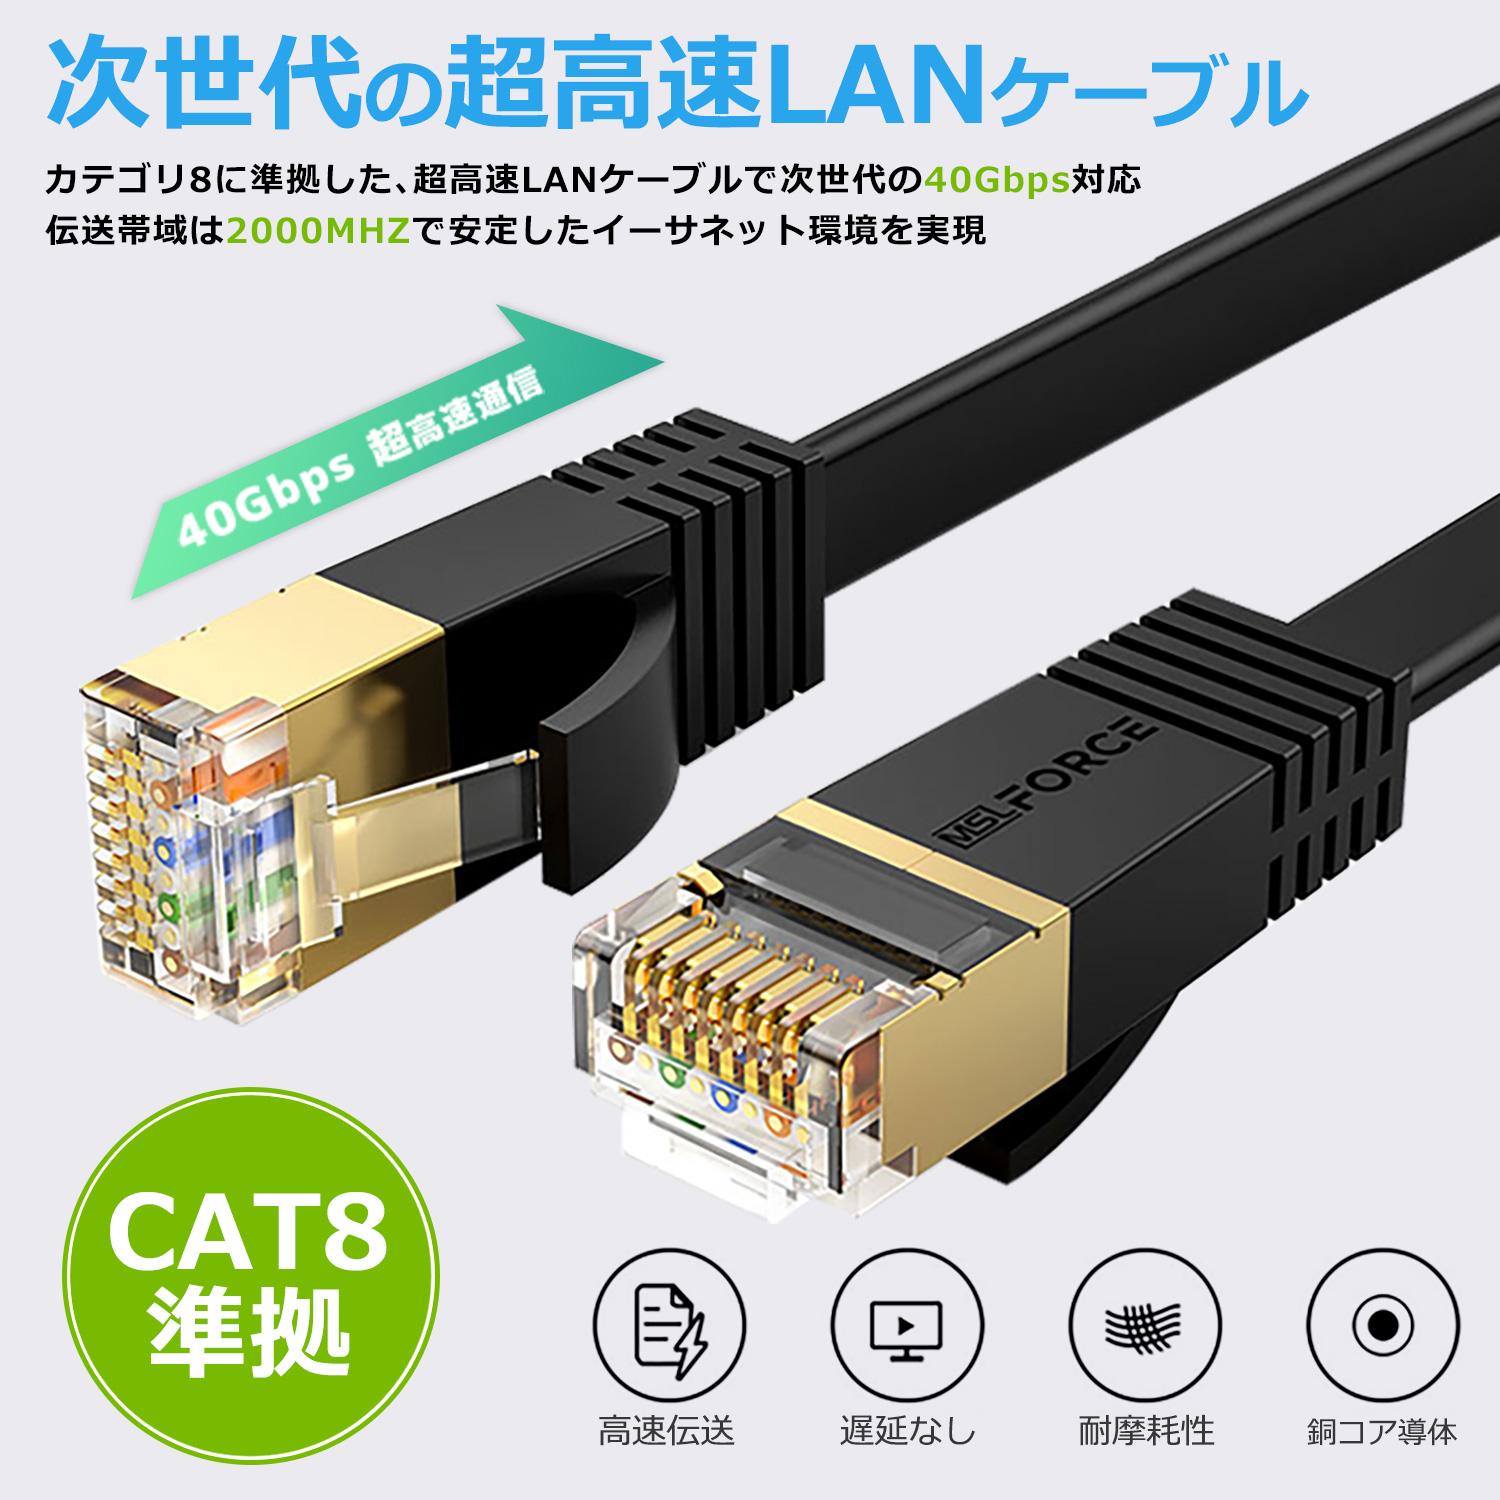  сегодня максимальный 600 иен скидка LAN кабель CAT8 40Gbps 2000MHz категория -8 Flat модель круг линия модель 0.2m/0.5m/1m/2m/3m/5m/8m/10m/15m/20m/30m ec8-f-r бесплатная доставка 